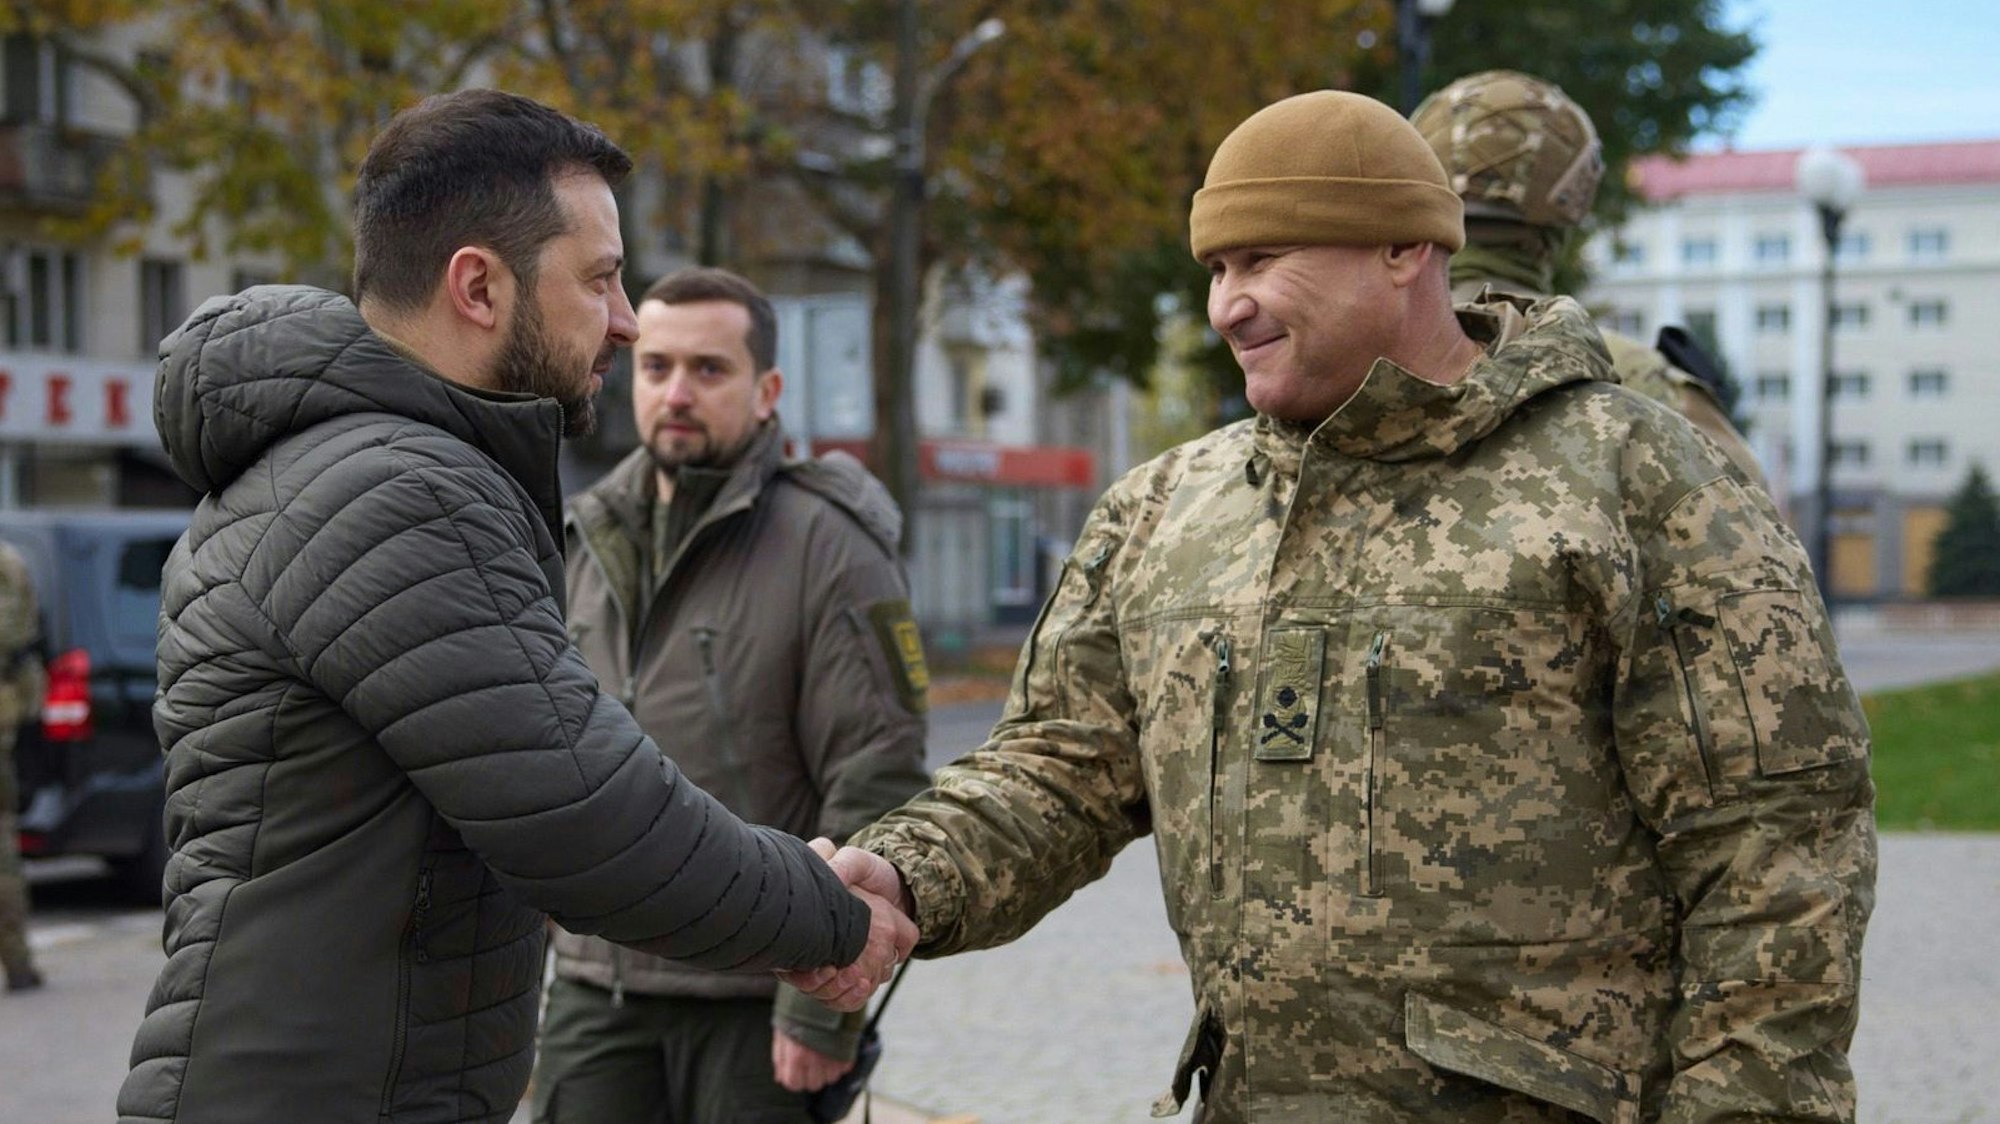 Wolodymyr Selenskyj, Präsident der Ukraine, während seines Besuchs in Cherson zu sehen. Der Präsident schüttelt einem Soldaten die Hand.